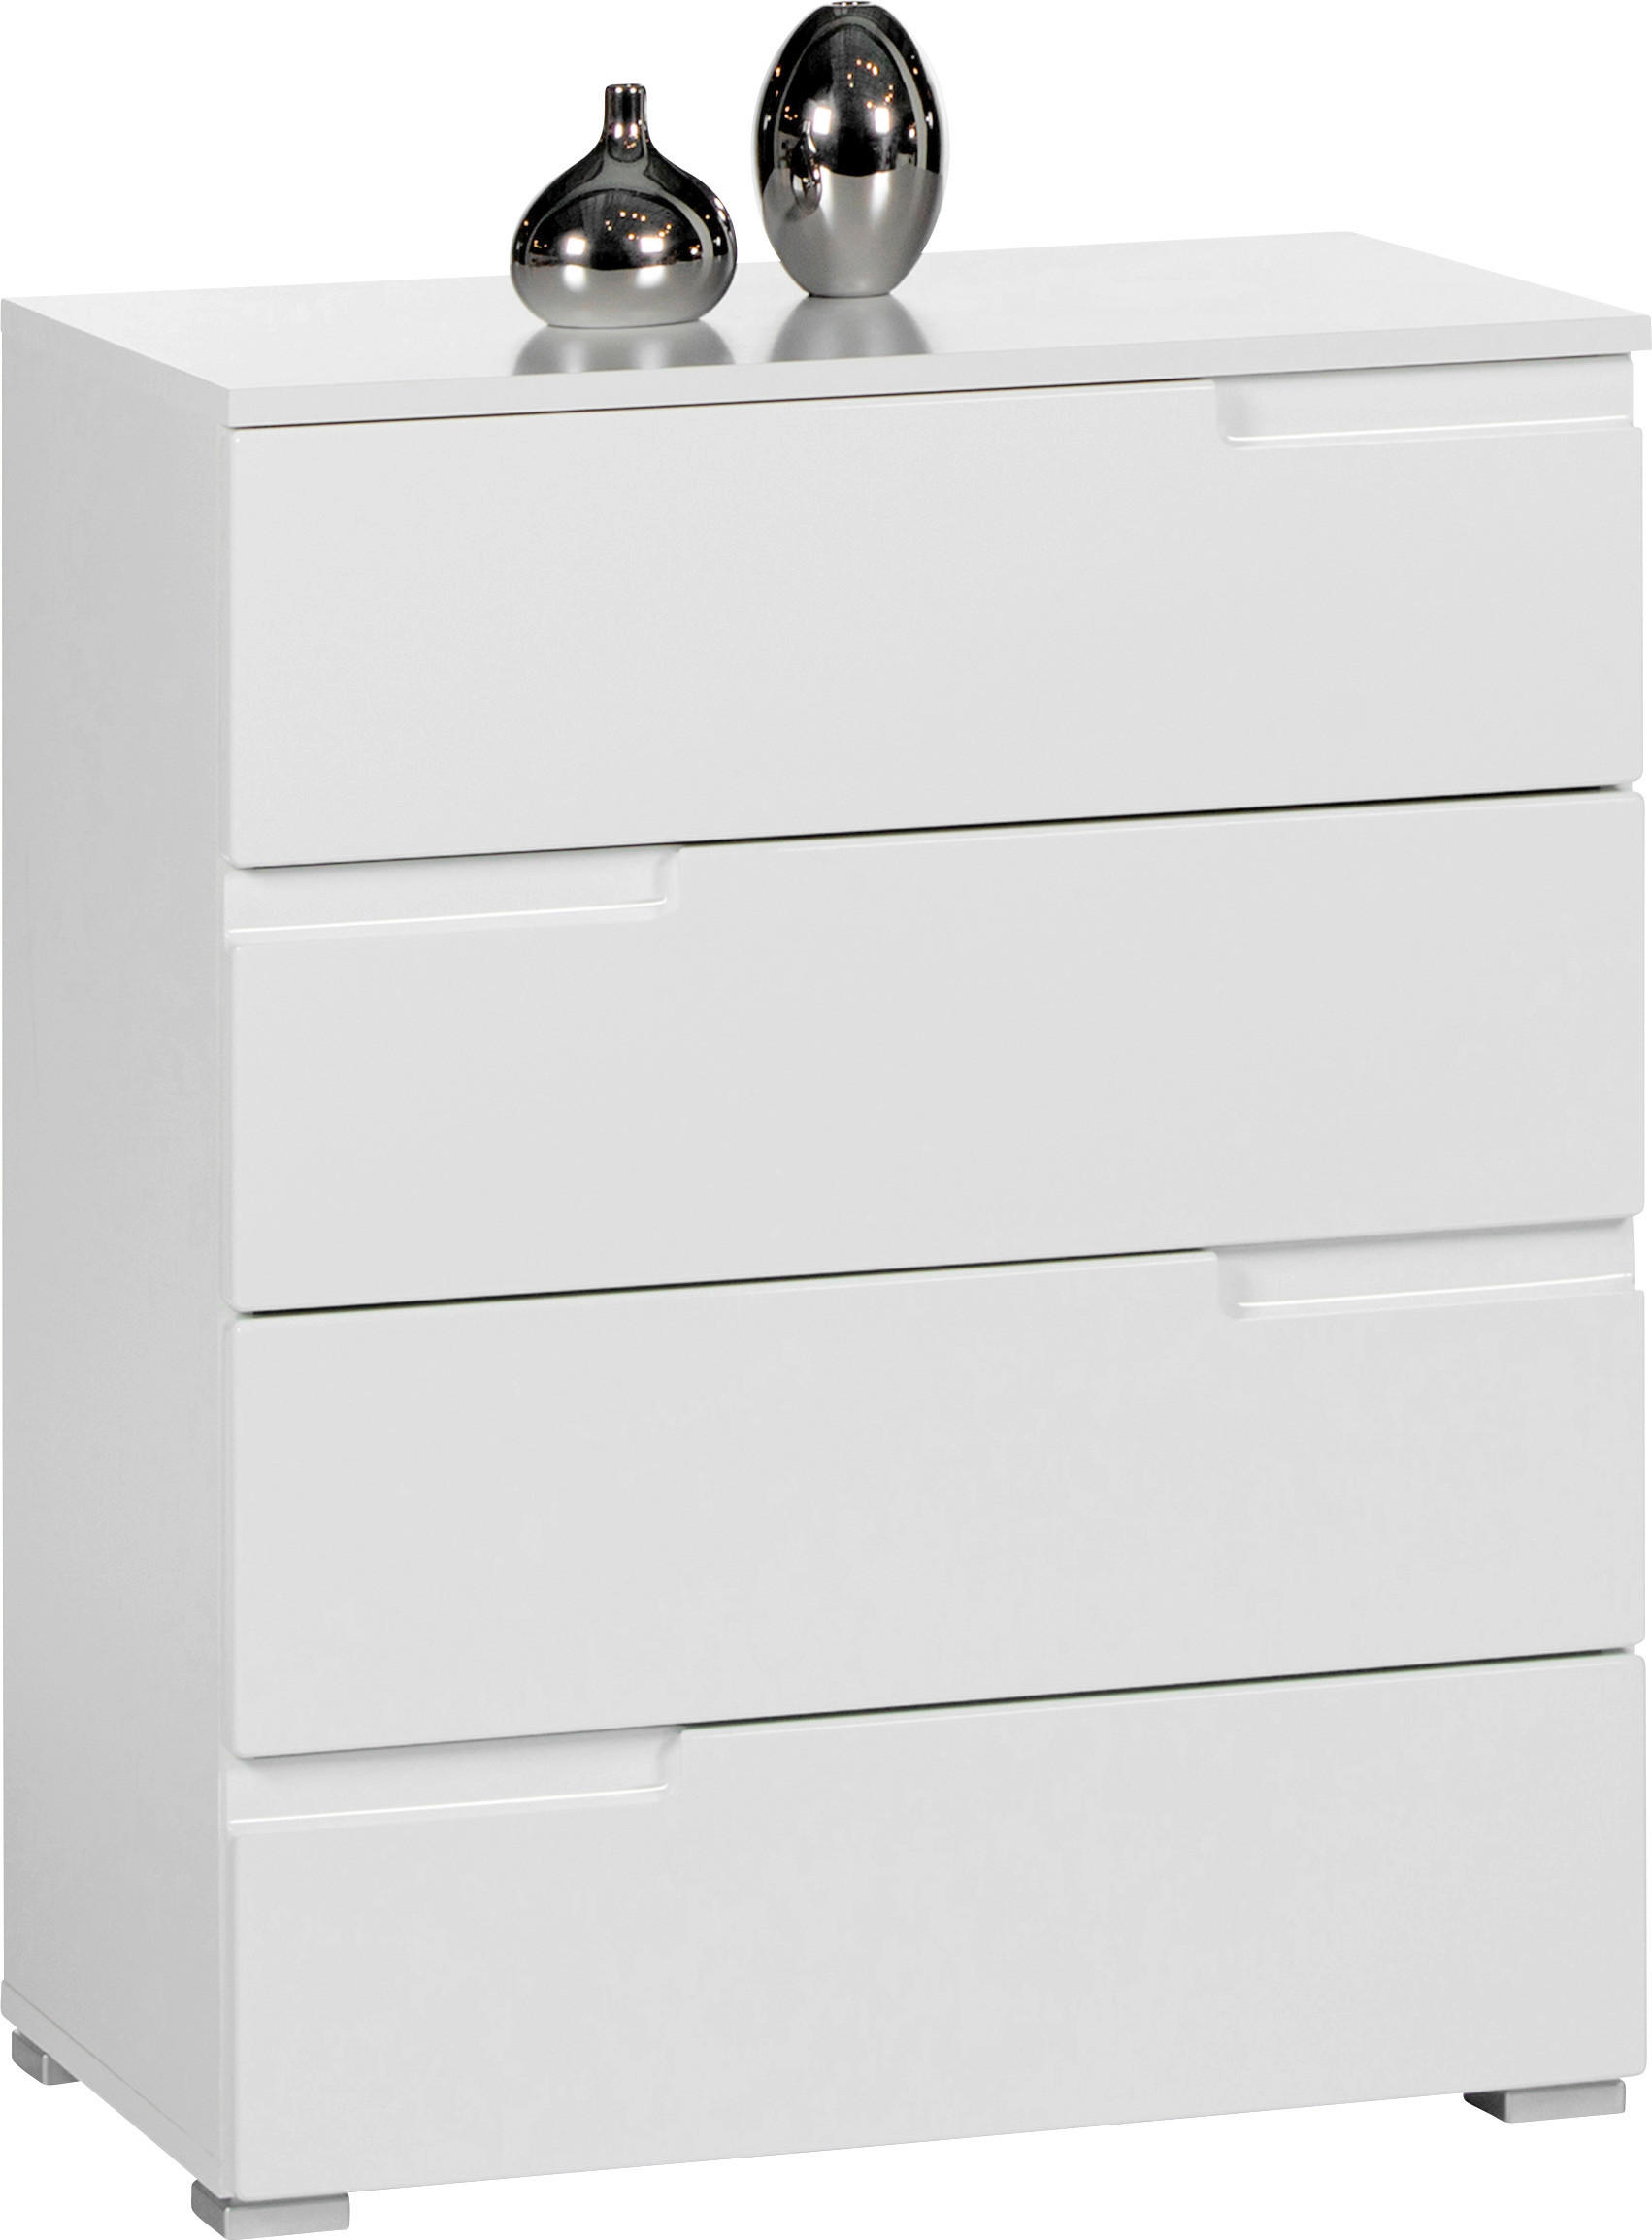 KOMMODE 65/80/40 cm  - Silberfarben/Weiß, Design, Kunststoff (65/80/40cm) - Carryhome